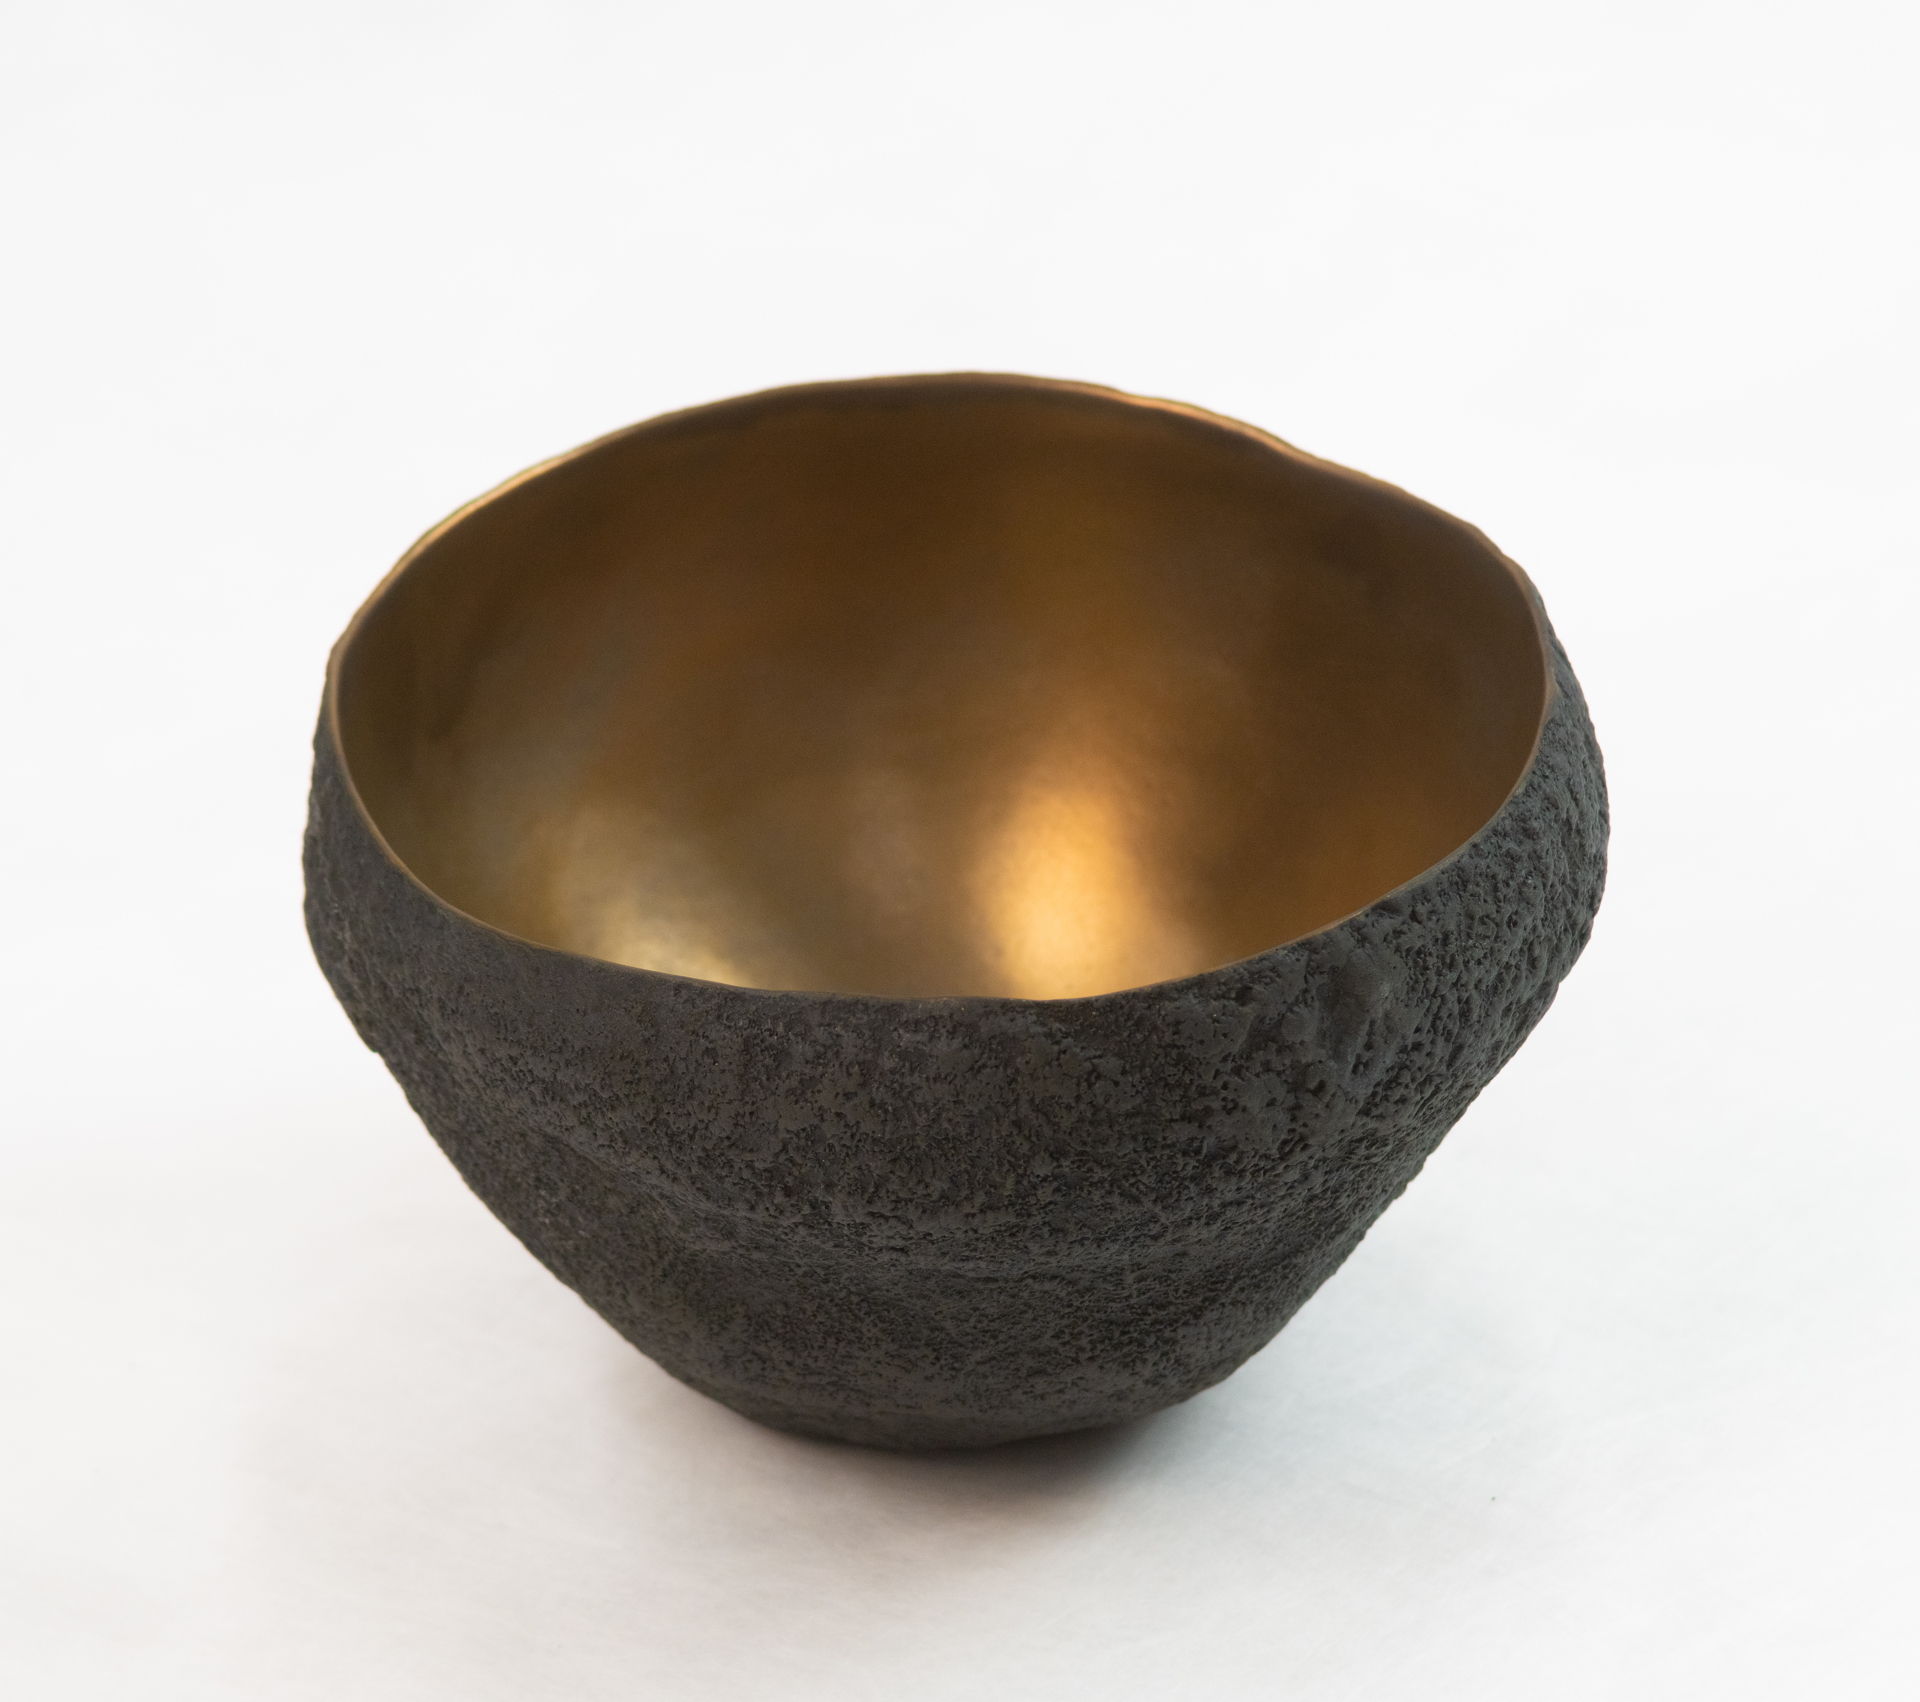 Ceramic with bronze glaze by Cristina Salusti